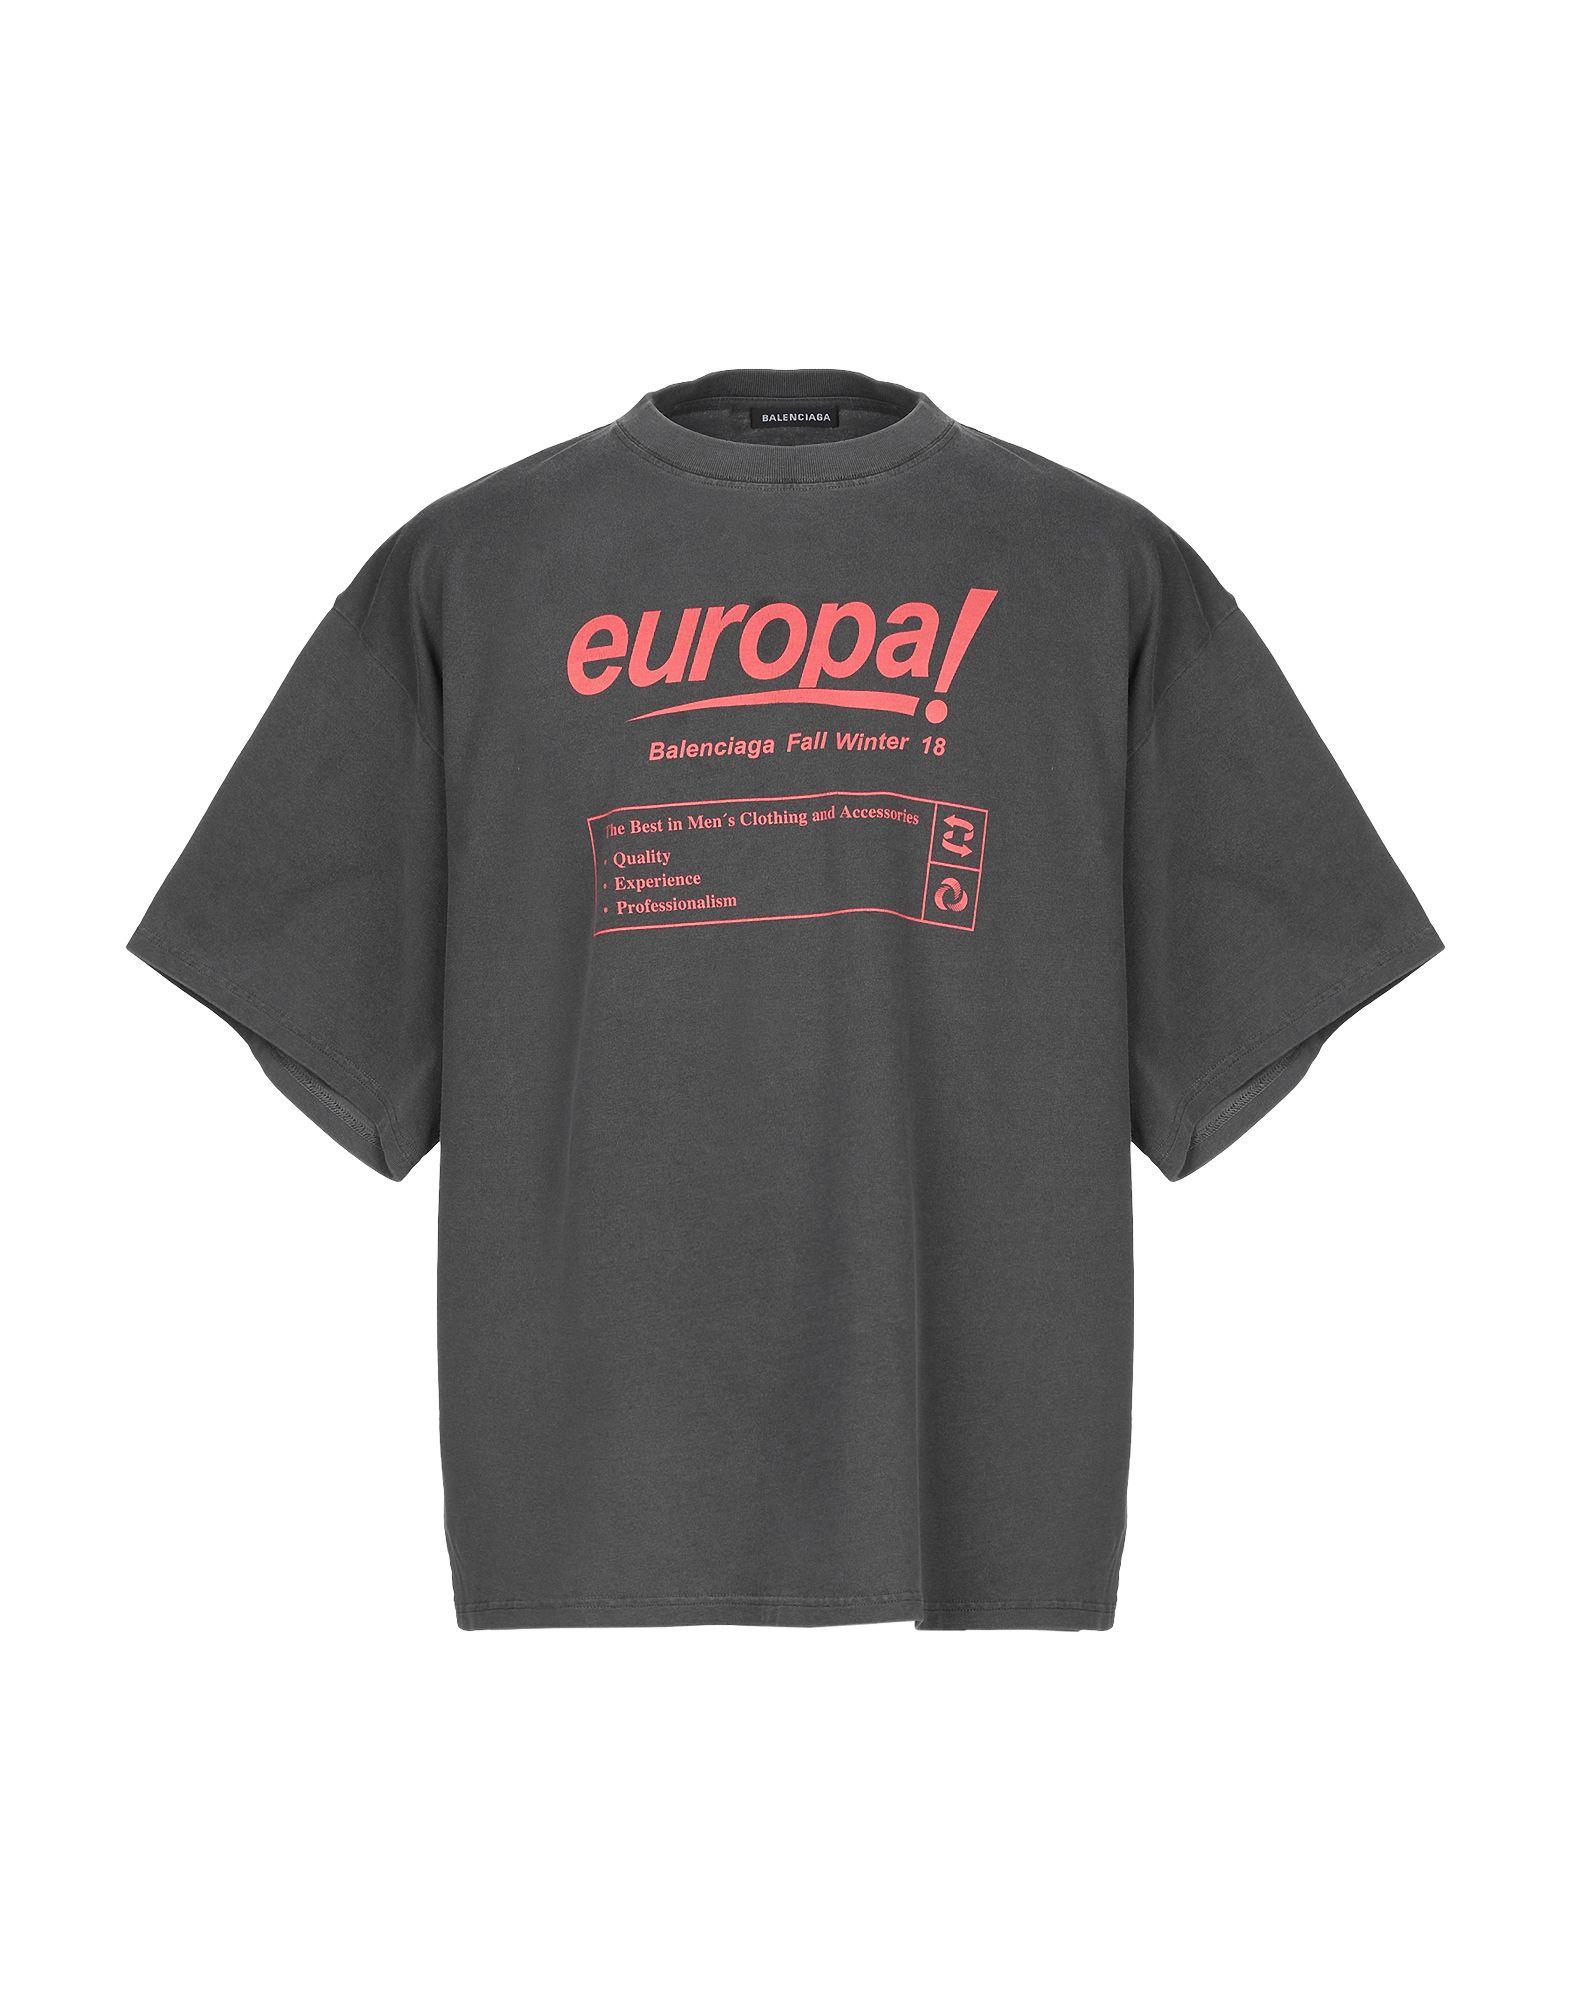 Balenciaga europe Tシャツ